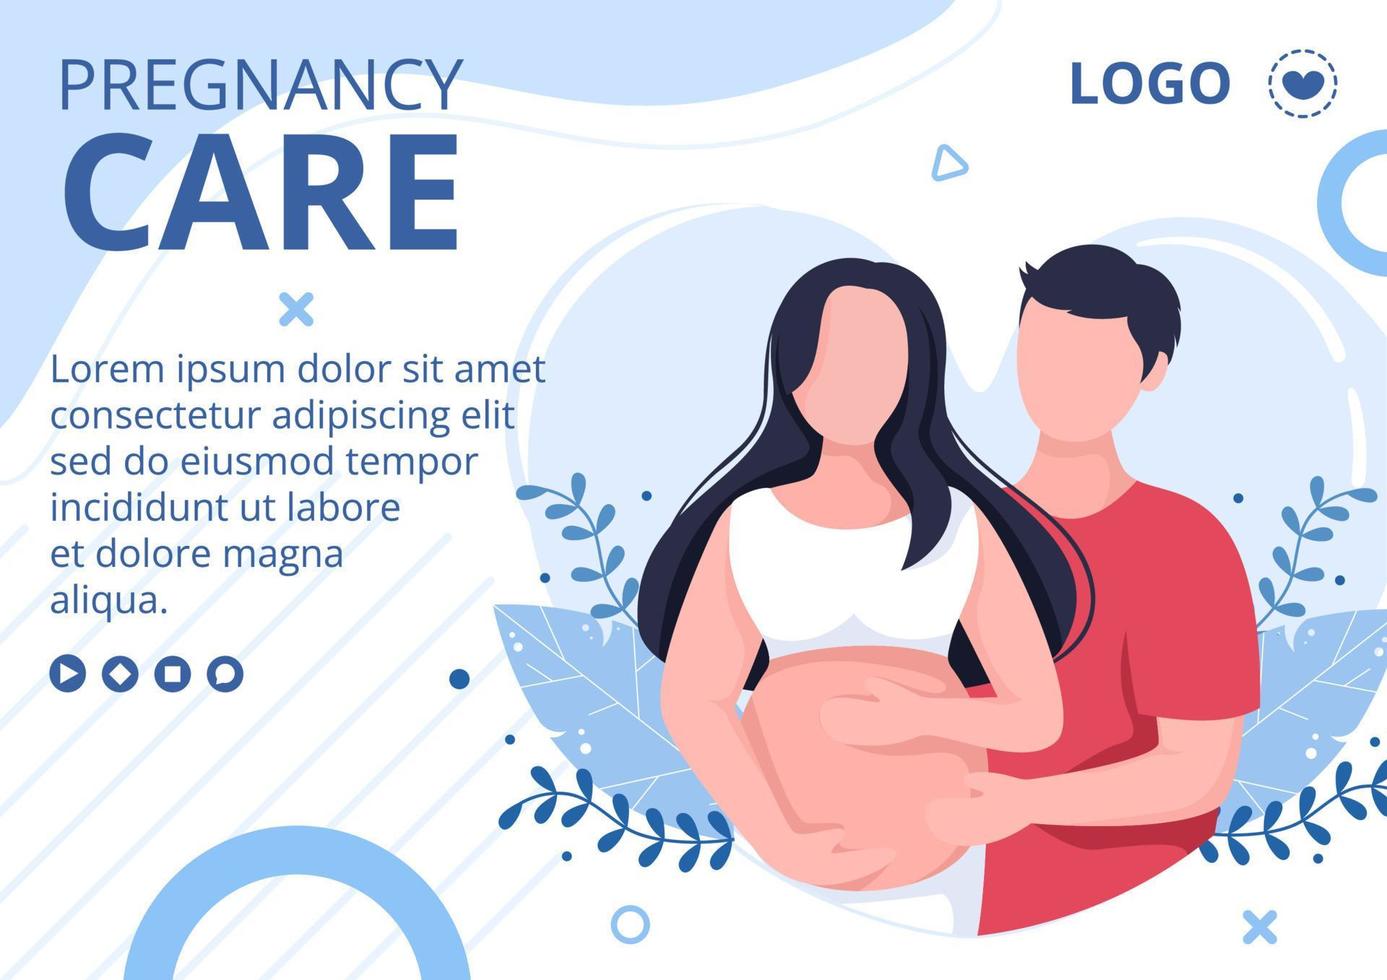 femme enceinte ou mère brochure modèle de soins de santé illustration de conception plate modifiable de fond carré pour les médias sociaux ou la carte de voeux vecteur